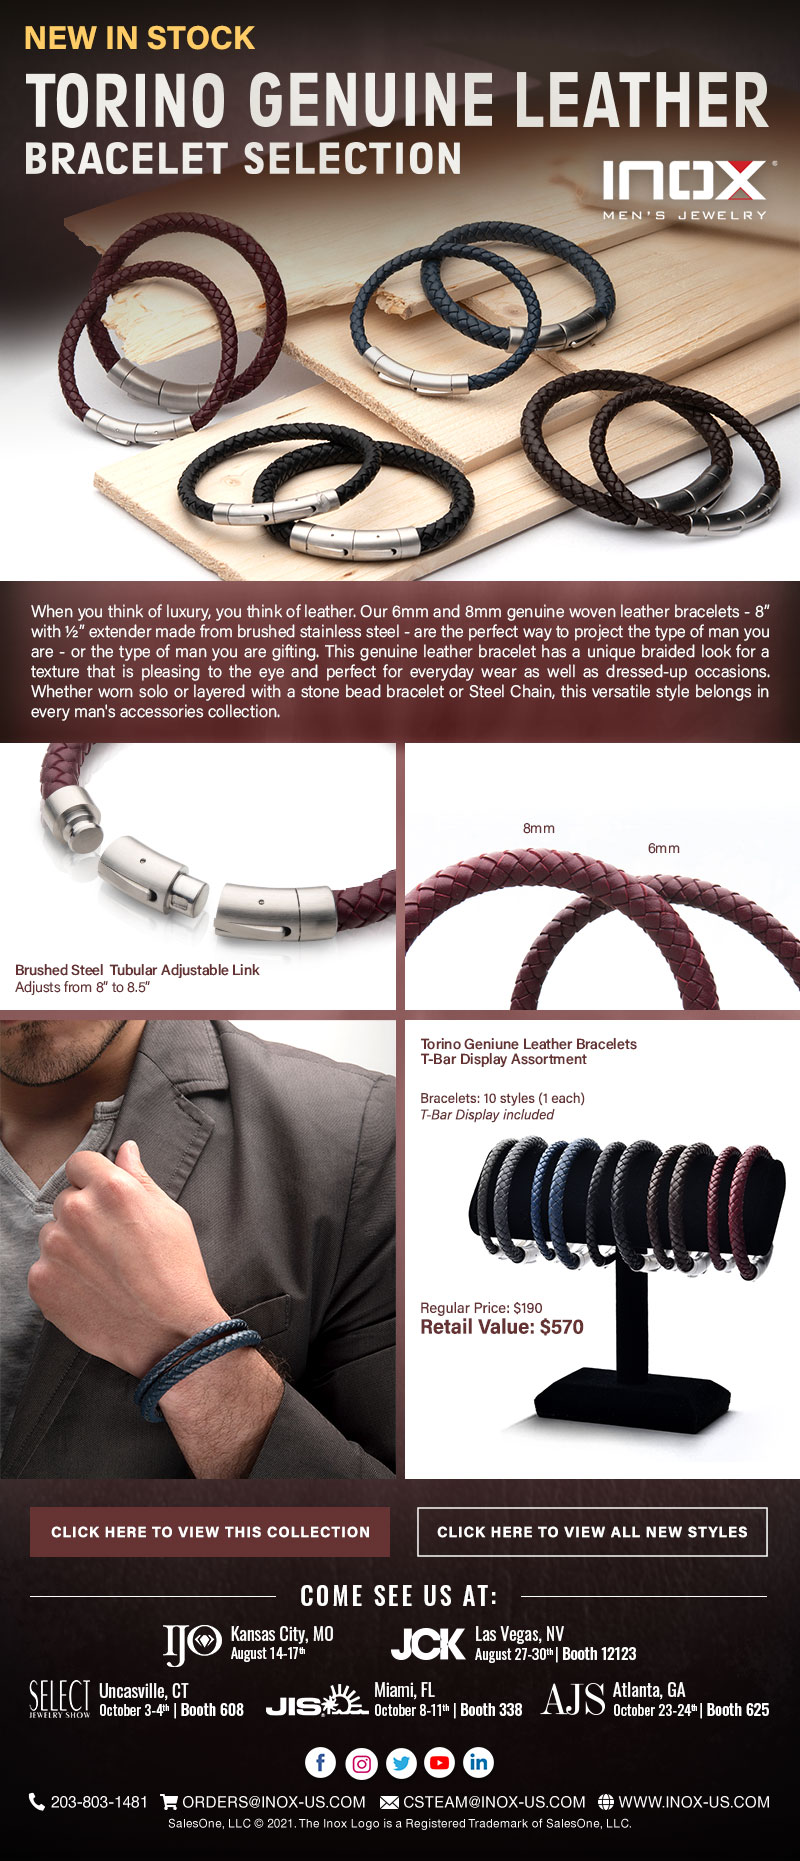 New Torino Genuine Leather Bracelets for Summer